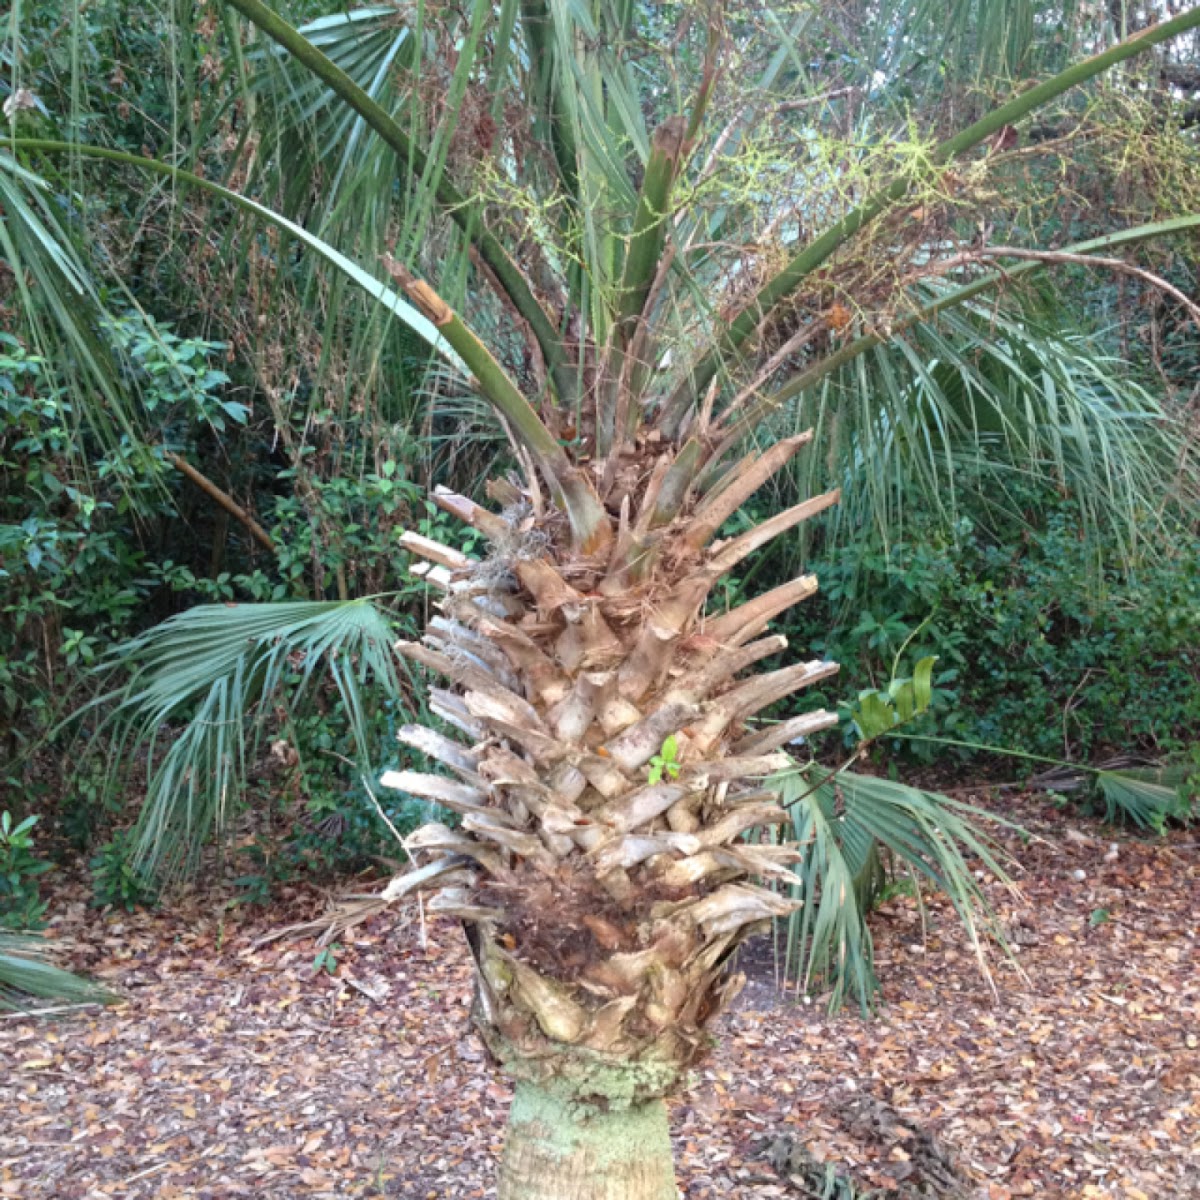 Sabale Palm